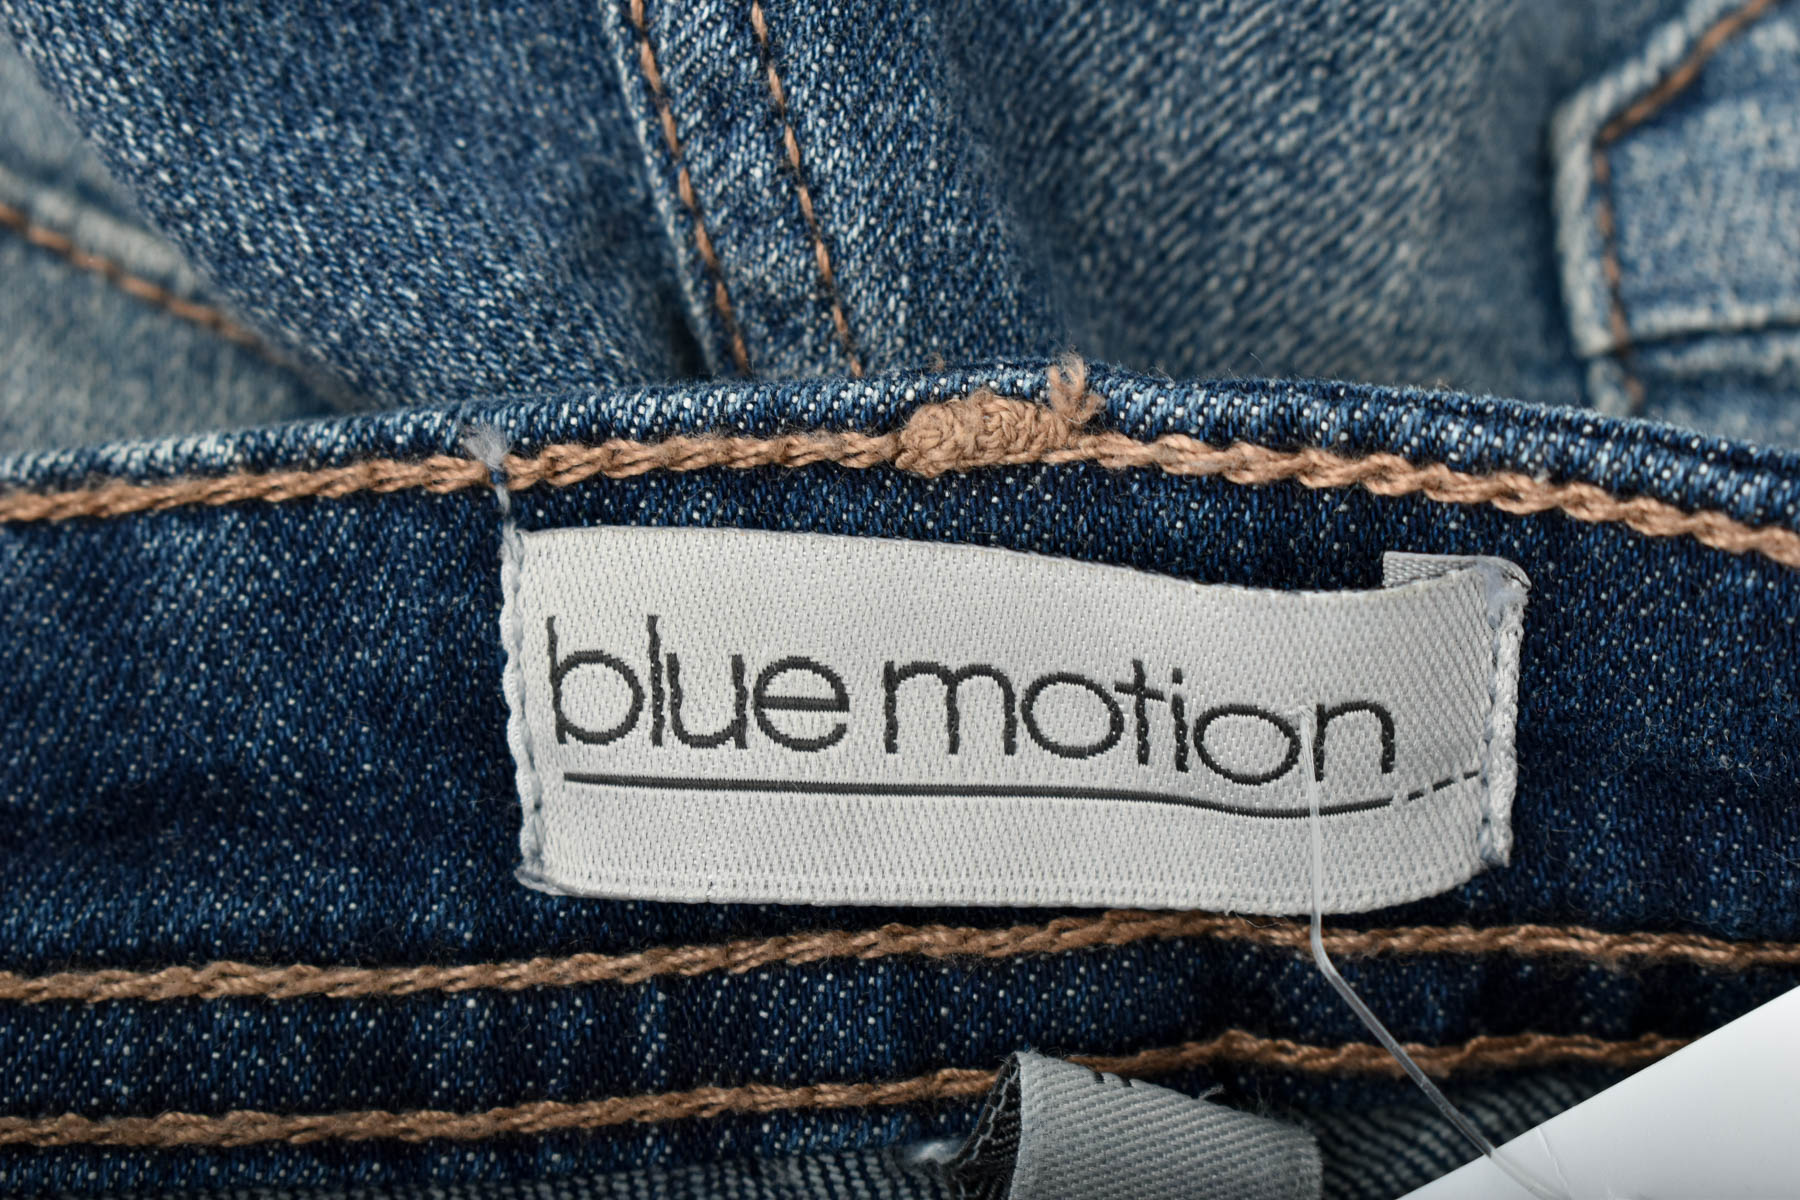 Дамски къси панталони - Blue Motion - 2